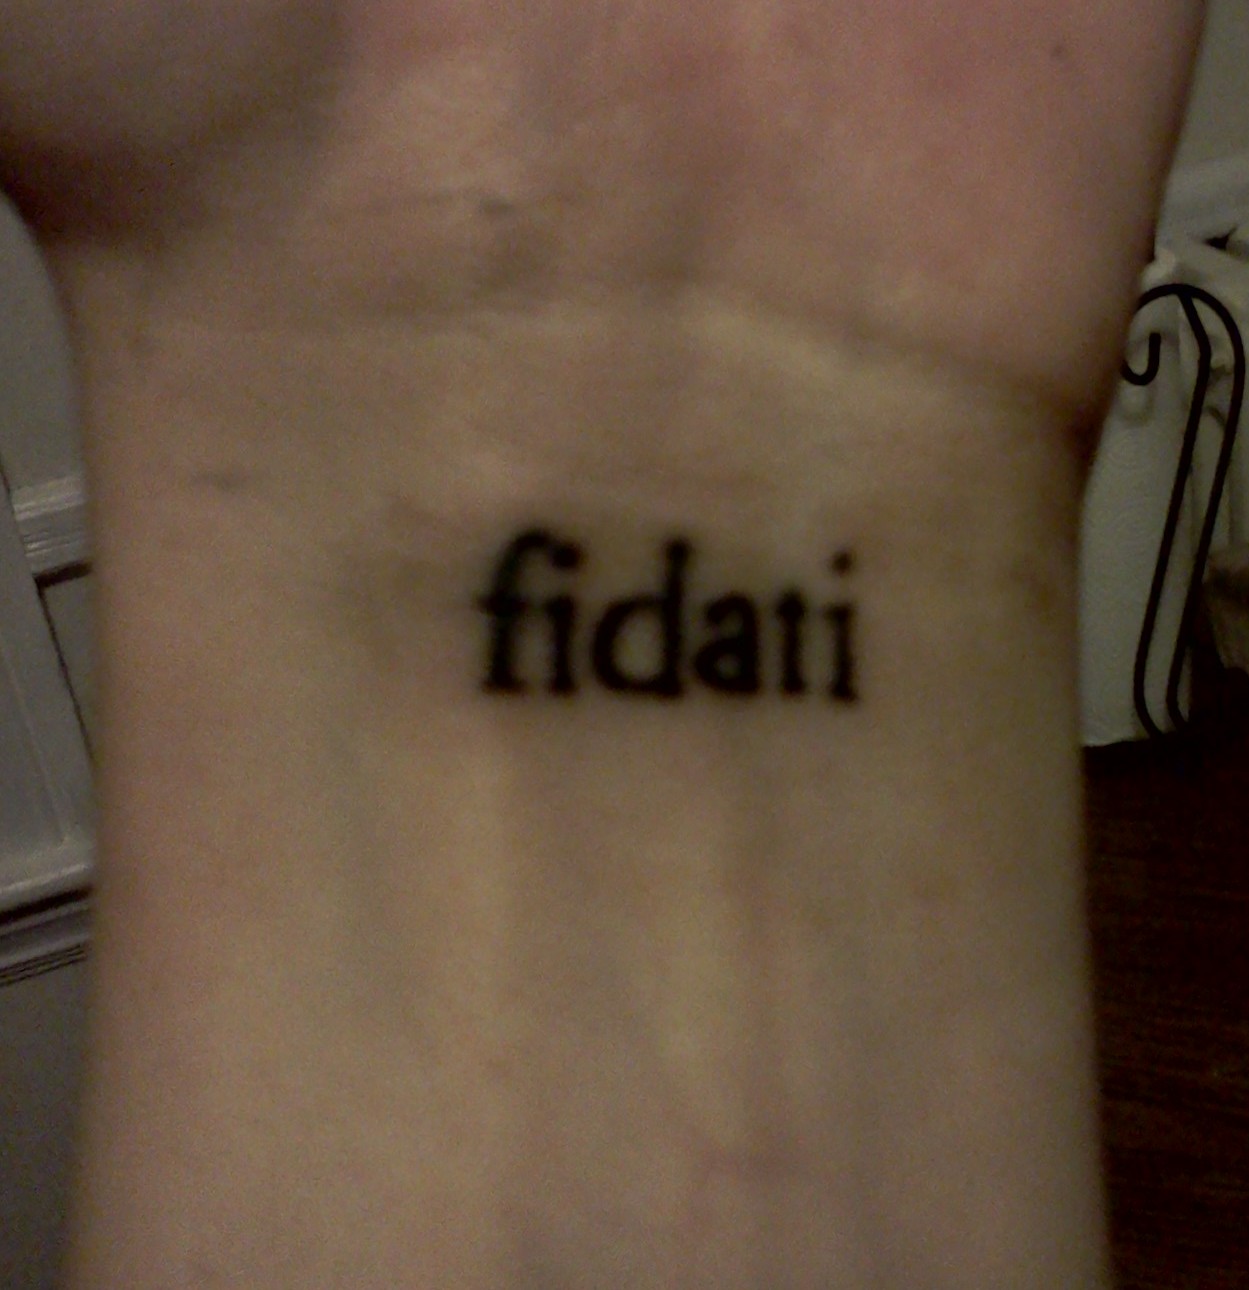 An inner wrist with a tattoo reading "fidati"